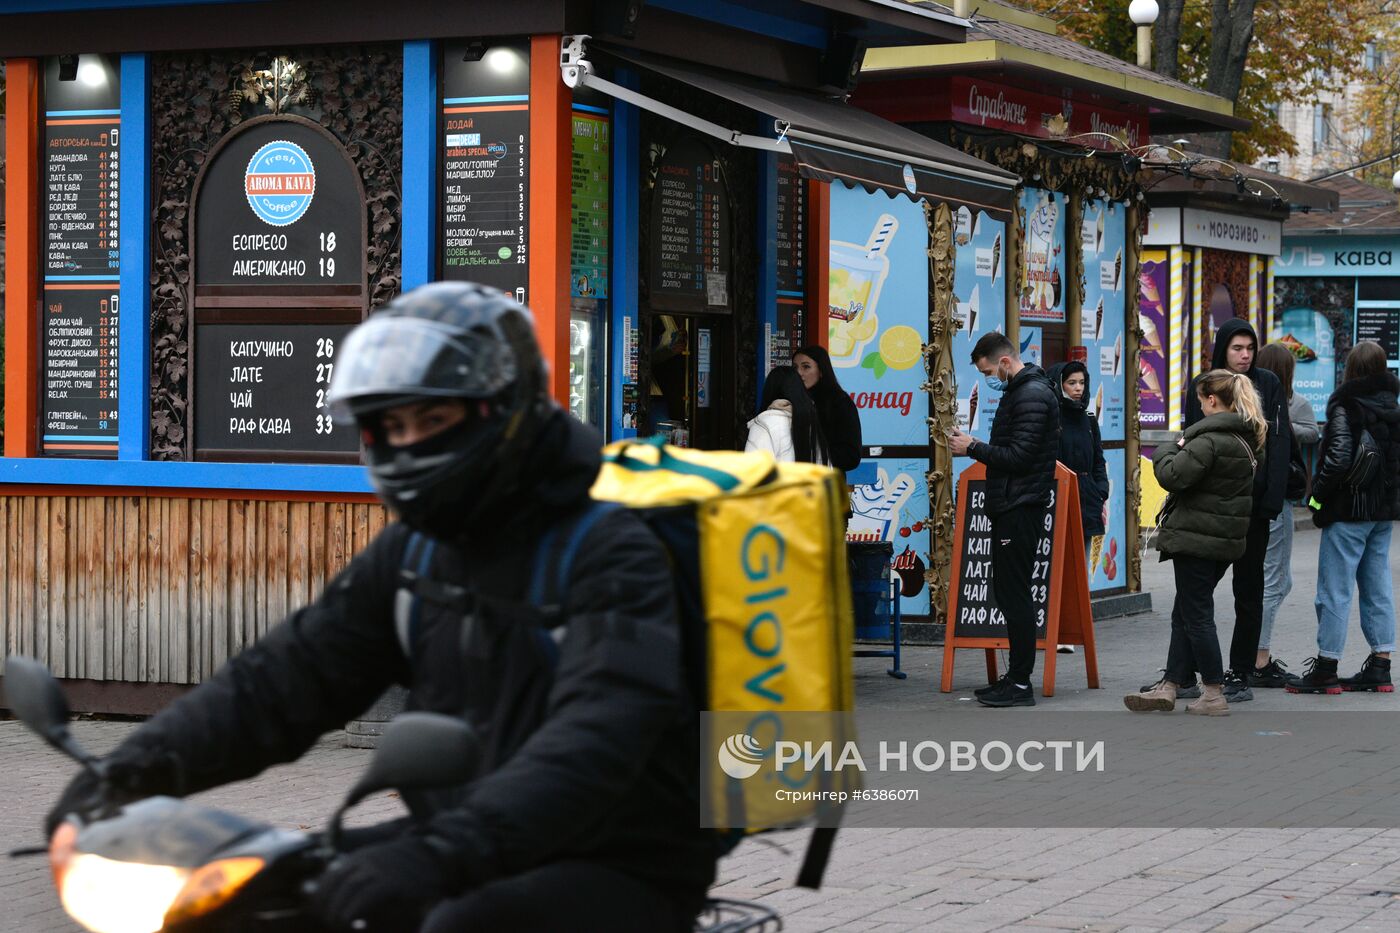 "Карантин выходного дня" введен на Украине